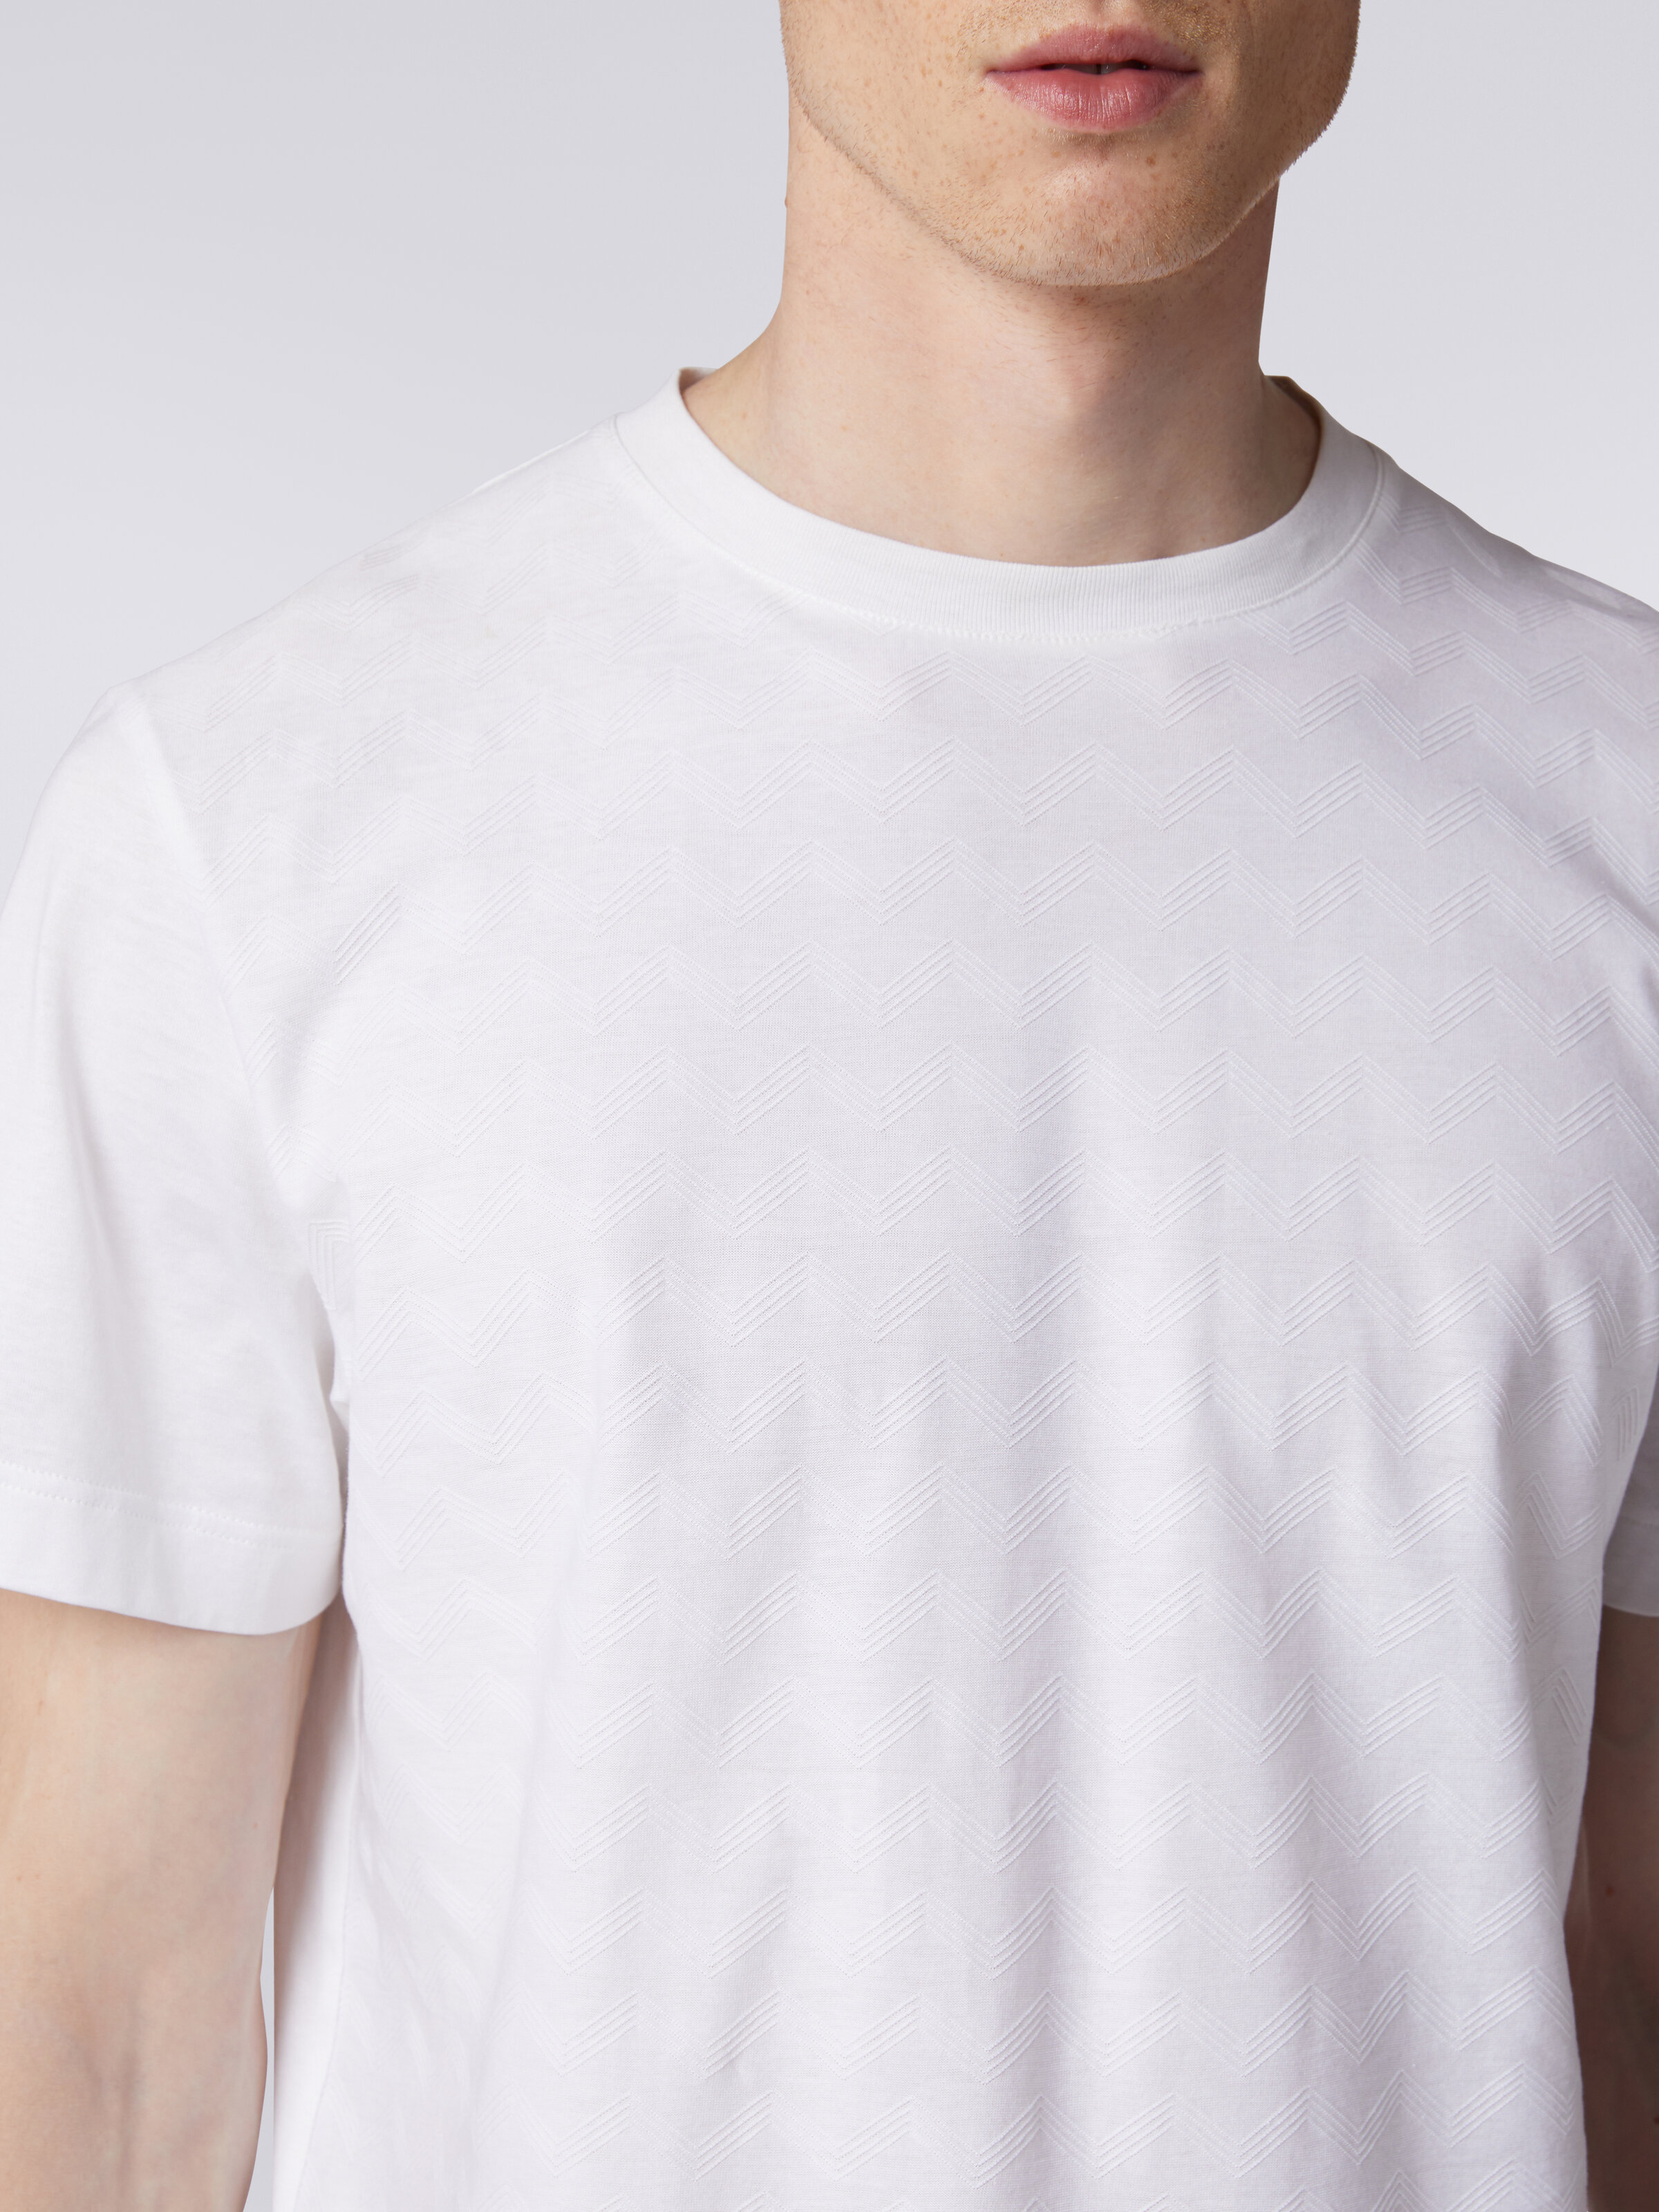 Kurzärmeliges Baumwoll-T-Shirt mit Zickzackmuster, Weiß  - 4